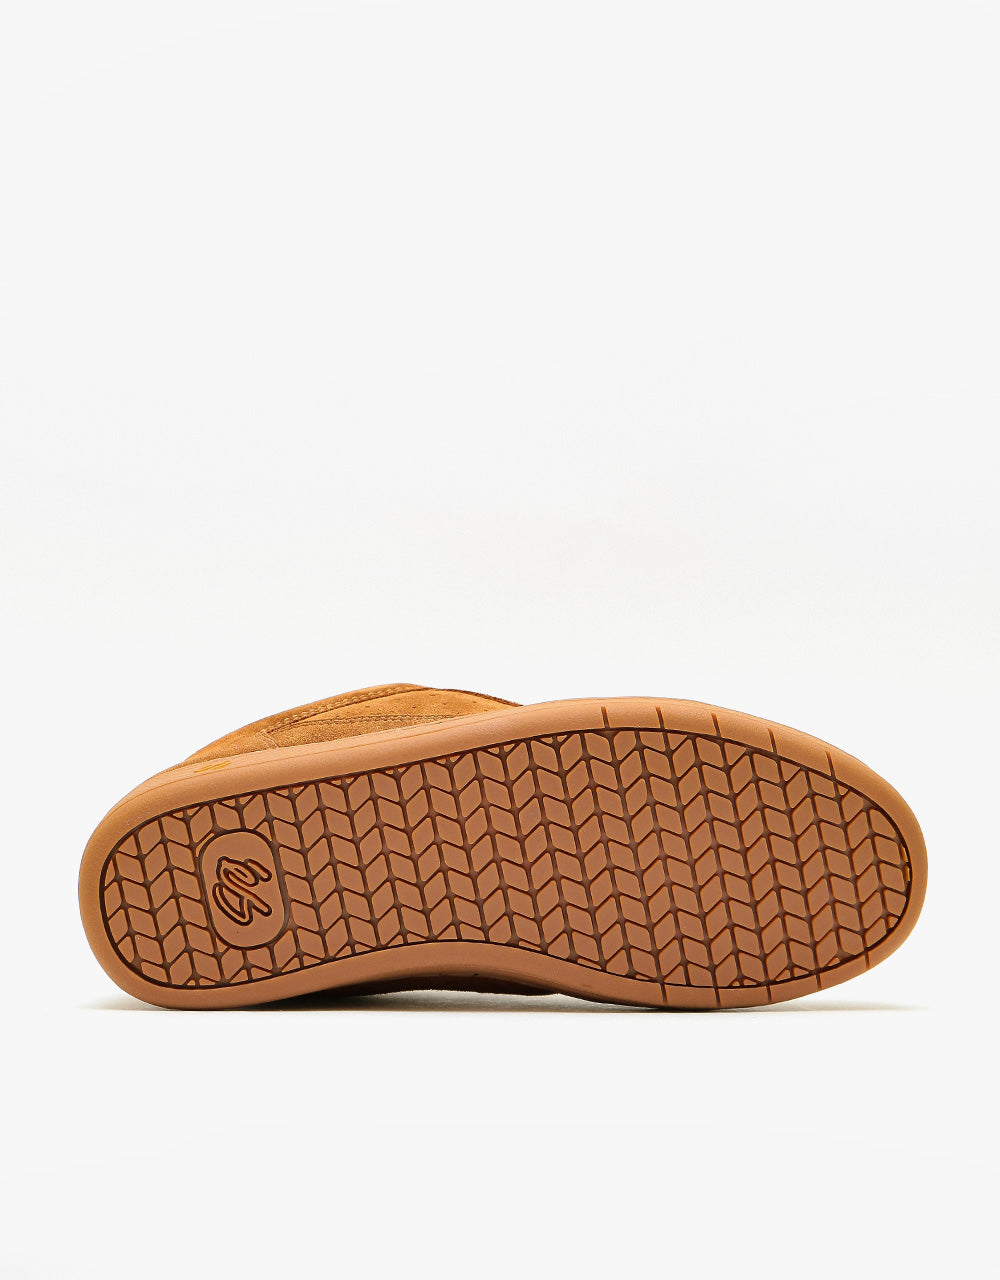 éS Accel OG Skate Shoes - Brown/Gum